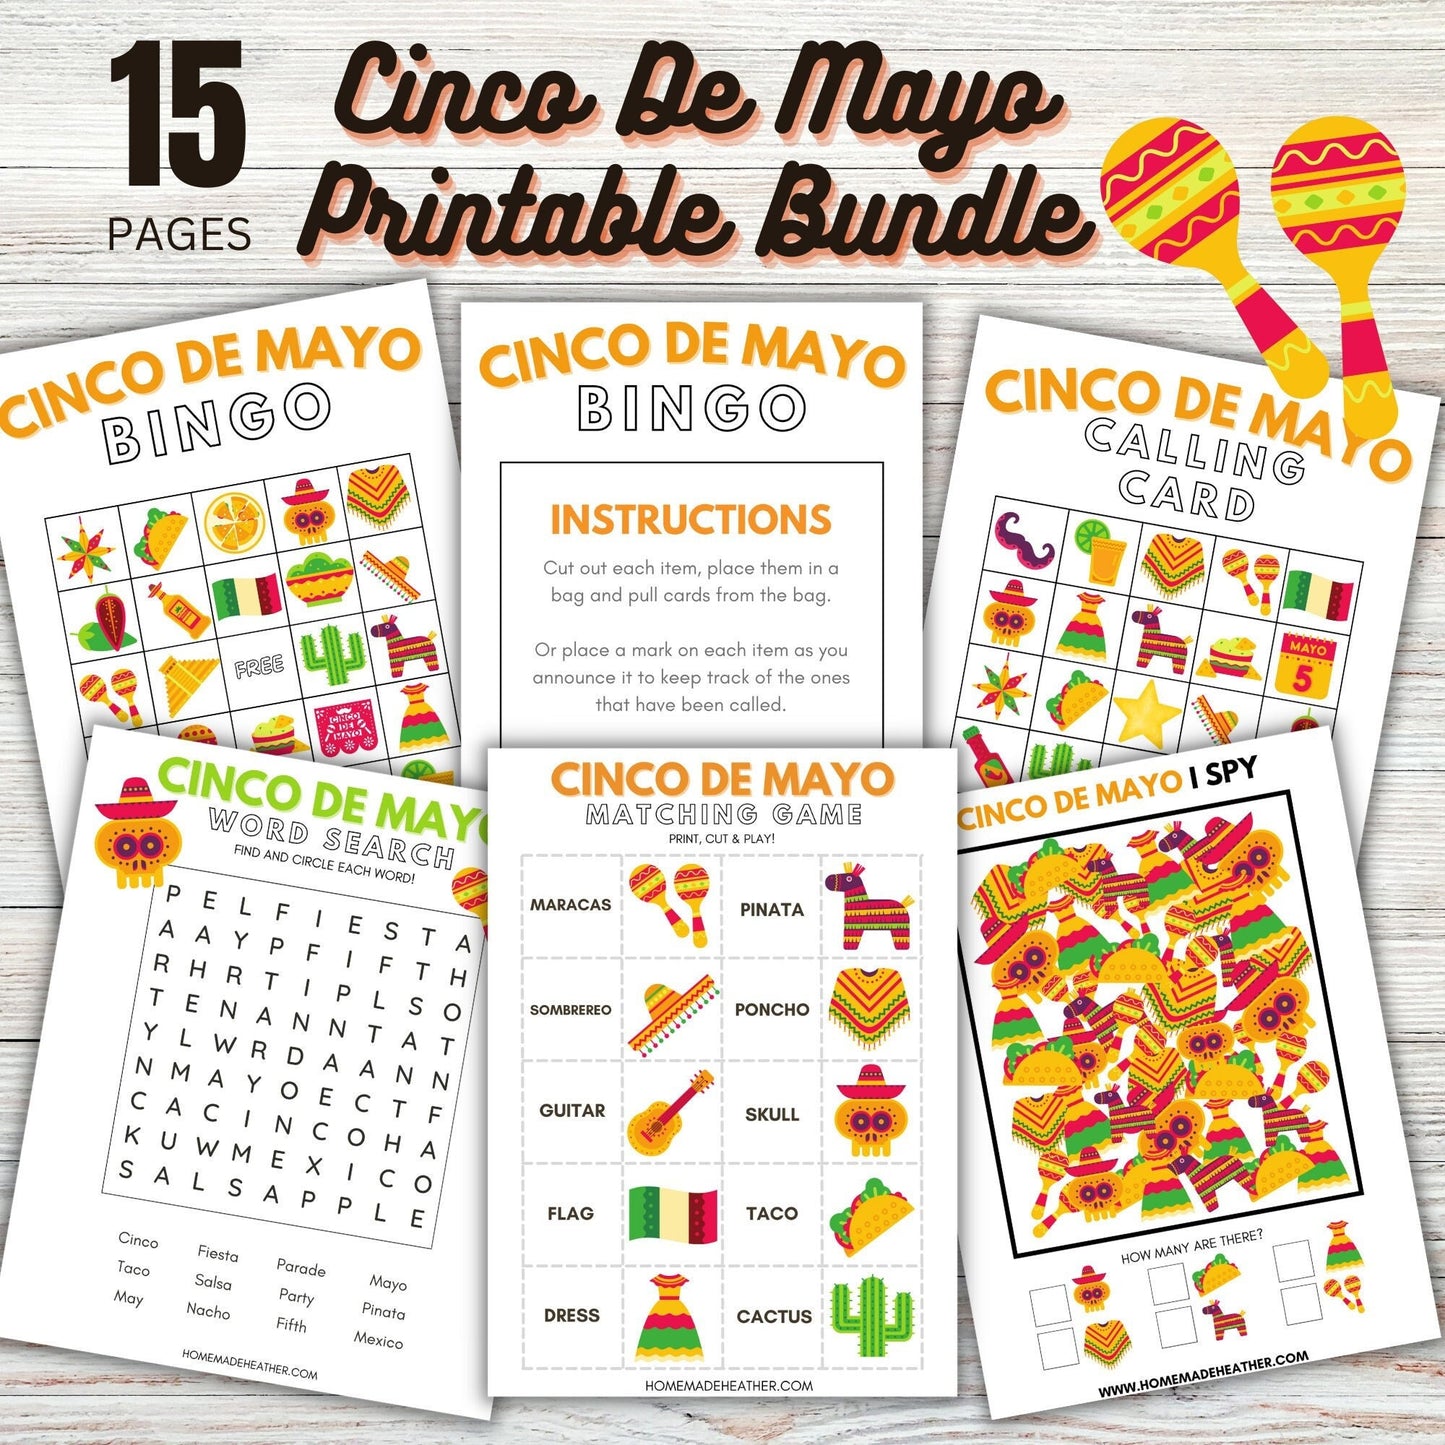 Cinco De Mayo Printable Activity Bundle - Cinco De Mayo Printable PDF - Instant Download